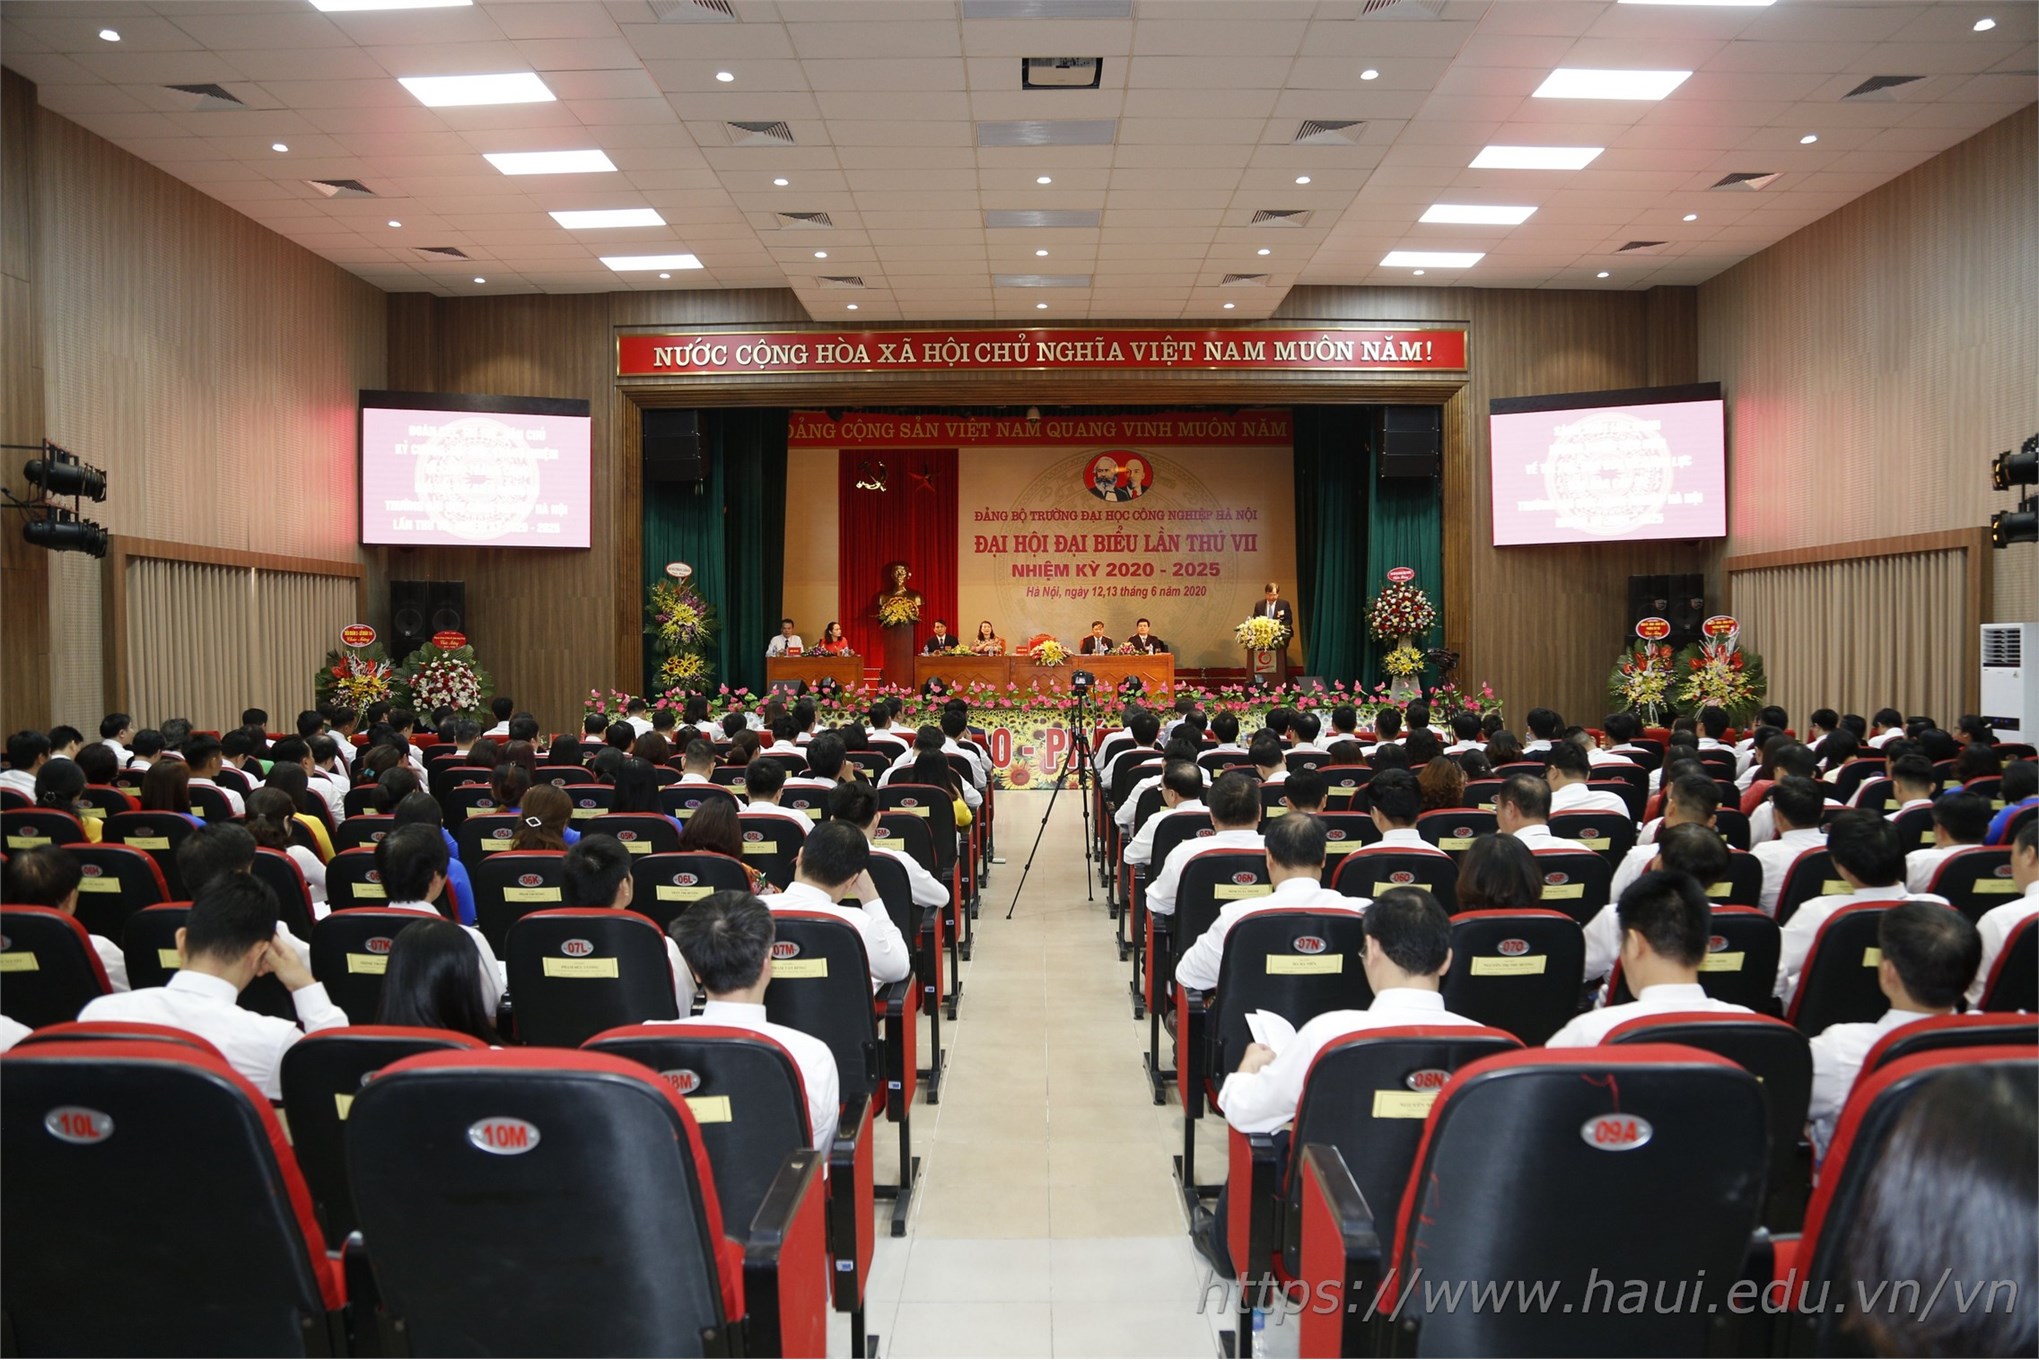 Đại hội Đảng bộ Trường Đại học Công nghiệp Hà Nội lần thứ VII, nhiệm kỳ 2020 - 2025